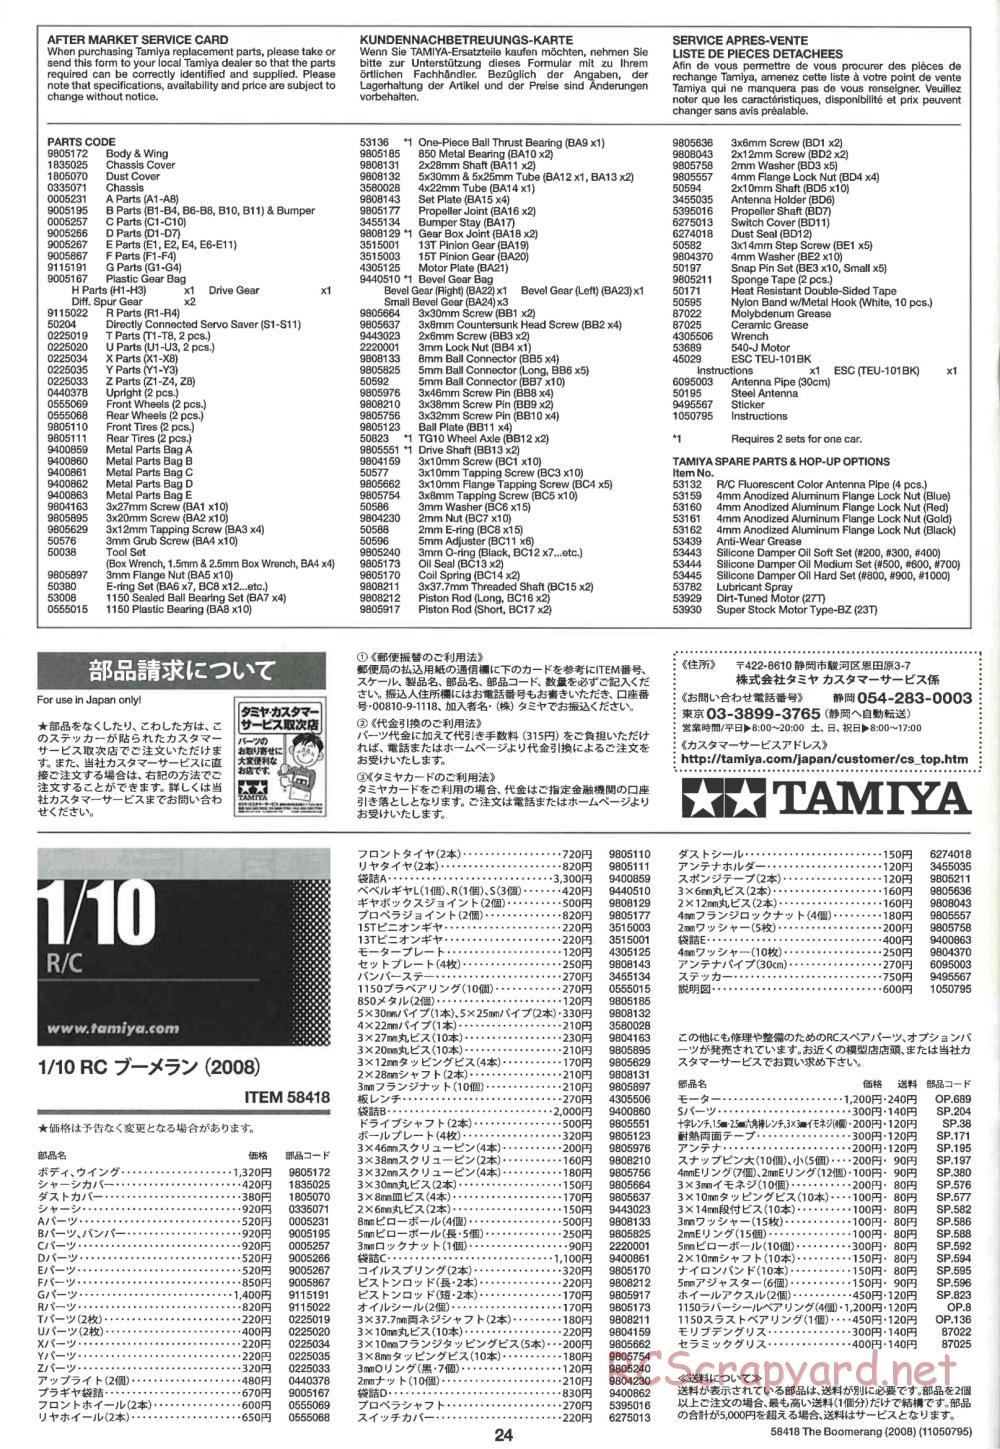 Tamiya - The Boomerang 2008 Chassis - Manual - Page 24